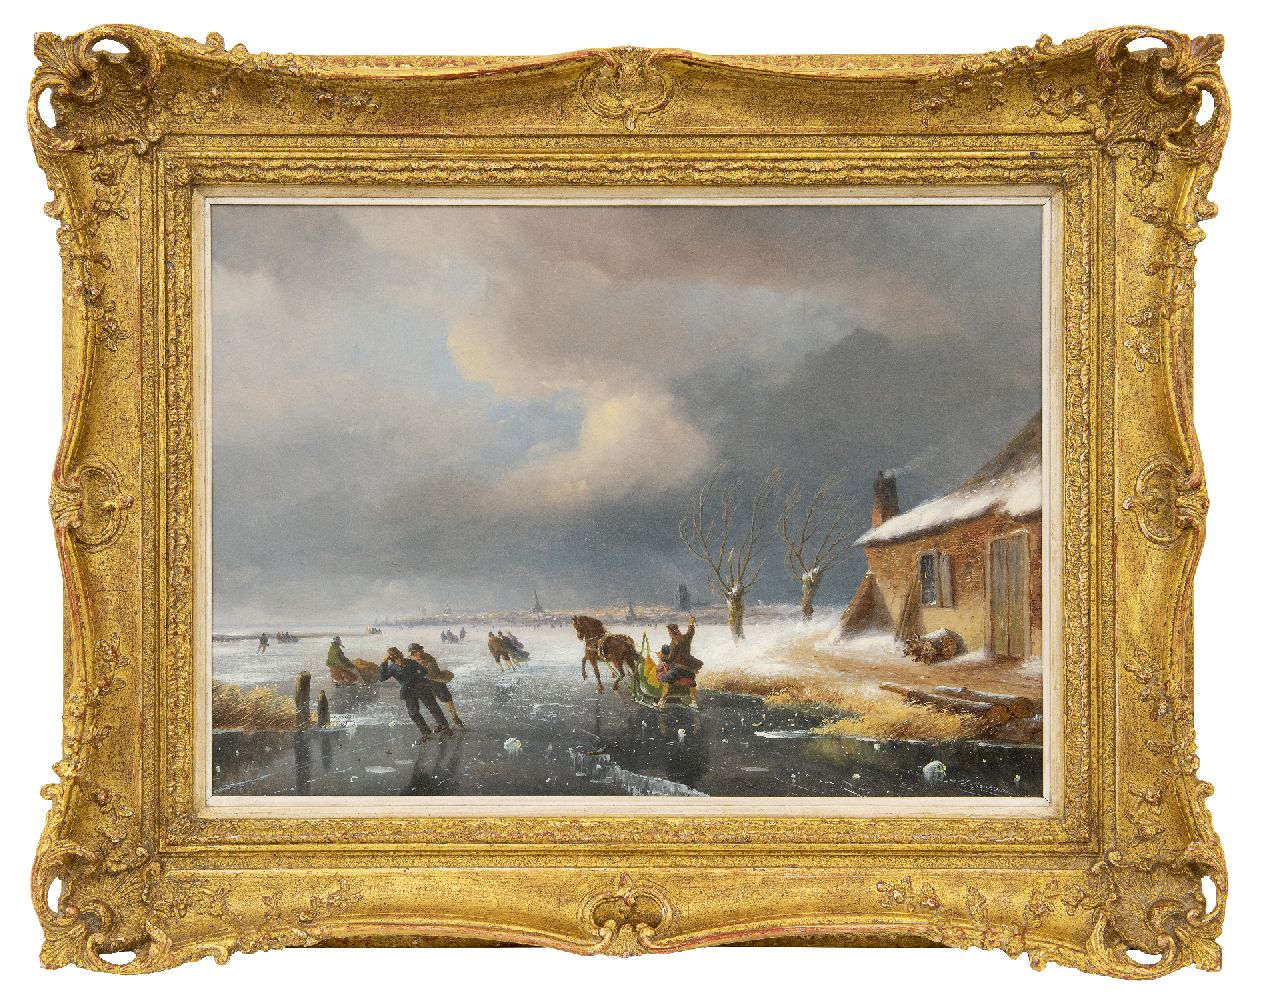 Roosenboom N.J.  | Nicolaas Johannes Roosenboom | Schilderijen te koop aangeboden | Schaatsers op een bevroren rivier met een stad in de verte, olieverf op paneel 36,1 x 50,0 cm, gesigneerd rechtsonder